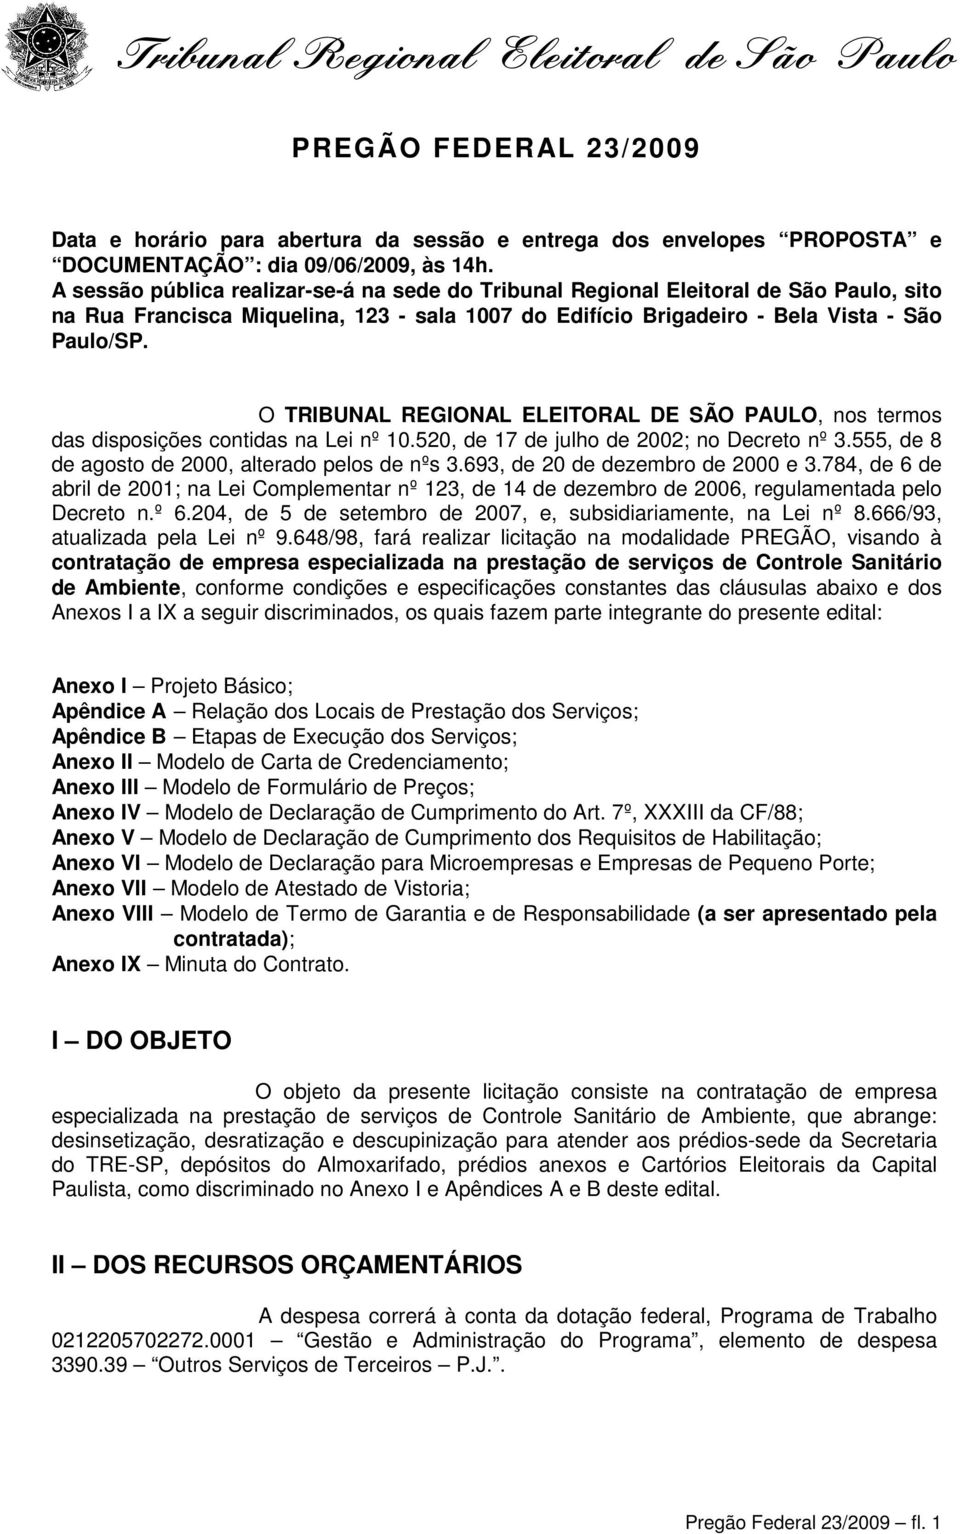 O TRIBUNAL REGIONAL ELEITORAL DE SÃO PAULO, nos termos das disposições contidas na Lei nº 10.520, de 17 de julho de 2002; no Decreto nº 3.555, de 8 de agosto de 2000, alterado pelos de nºs 3.